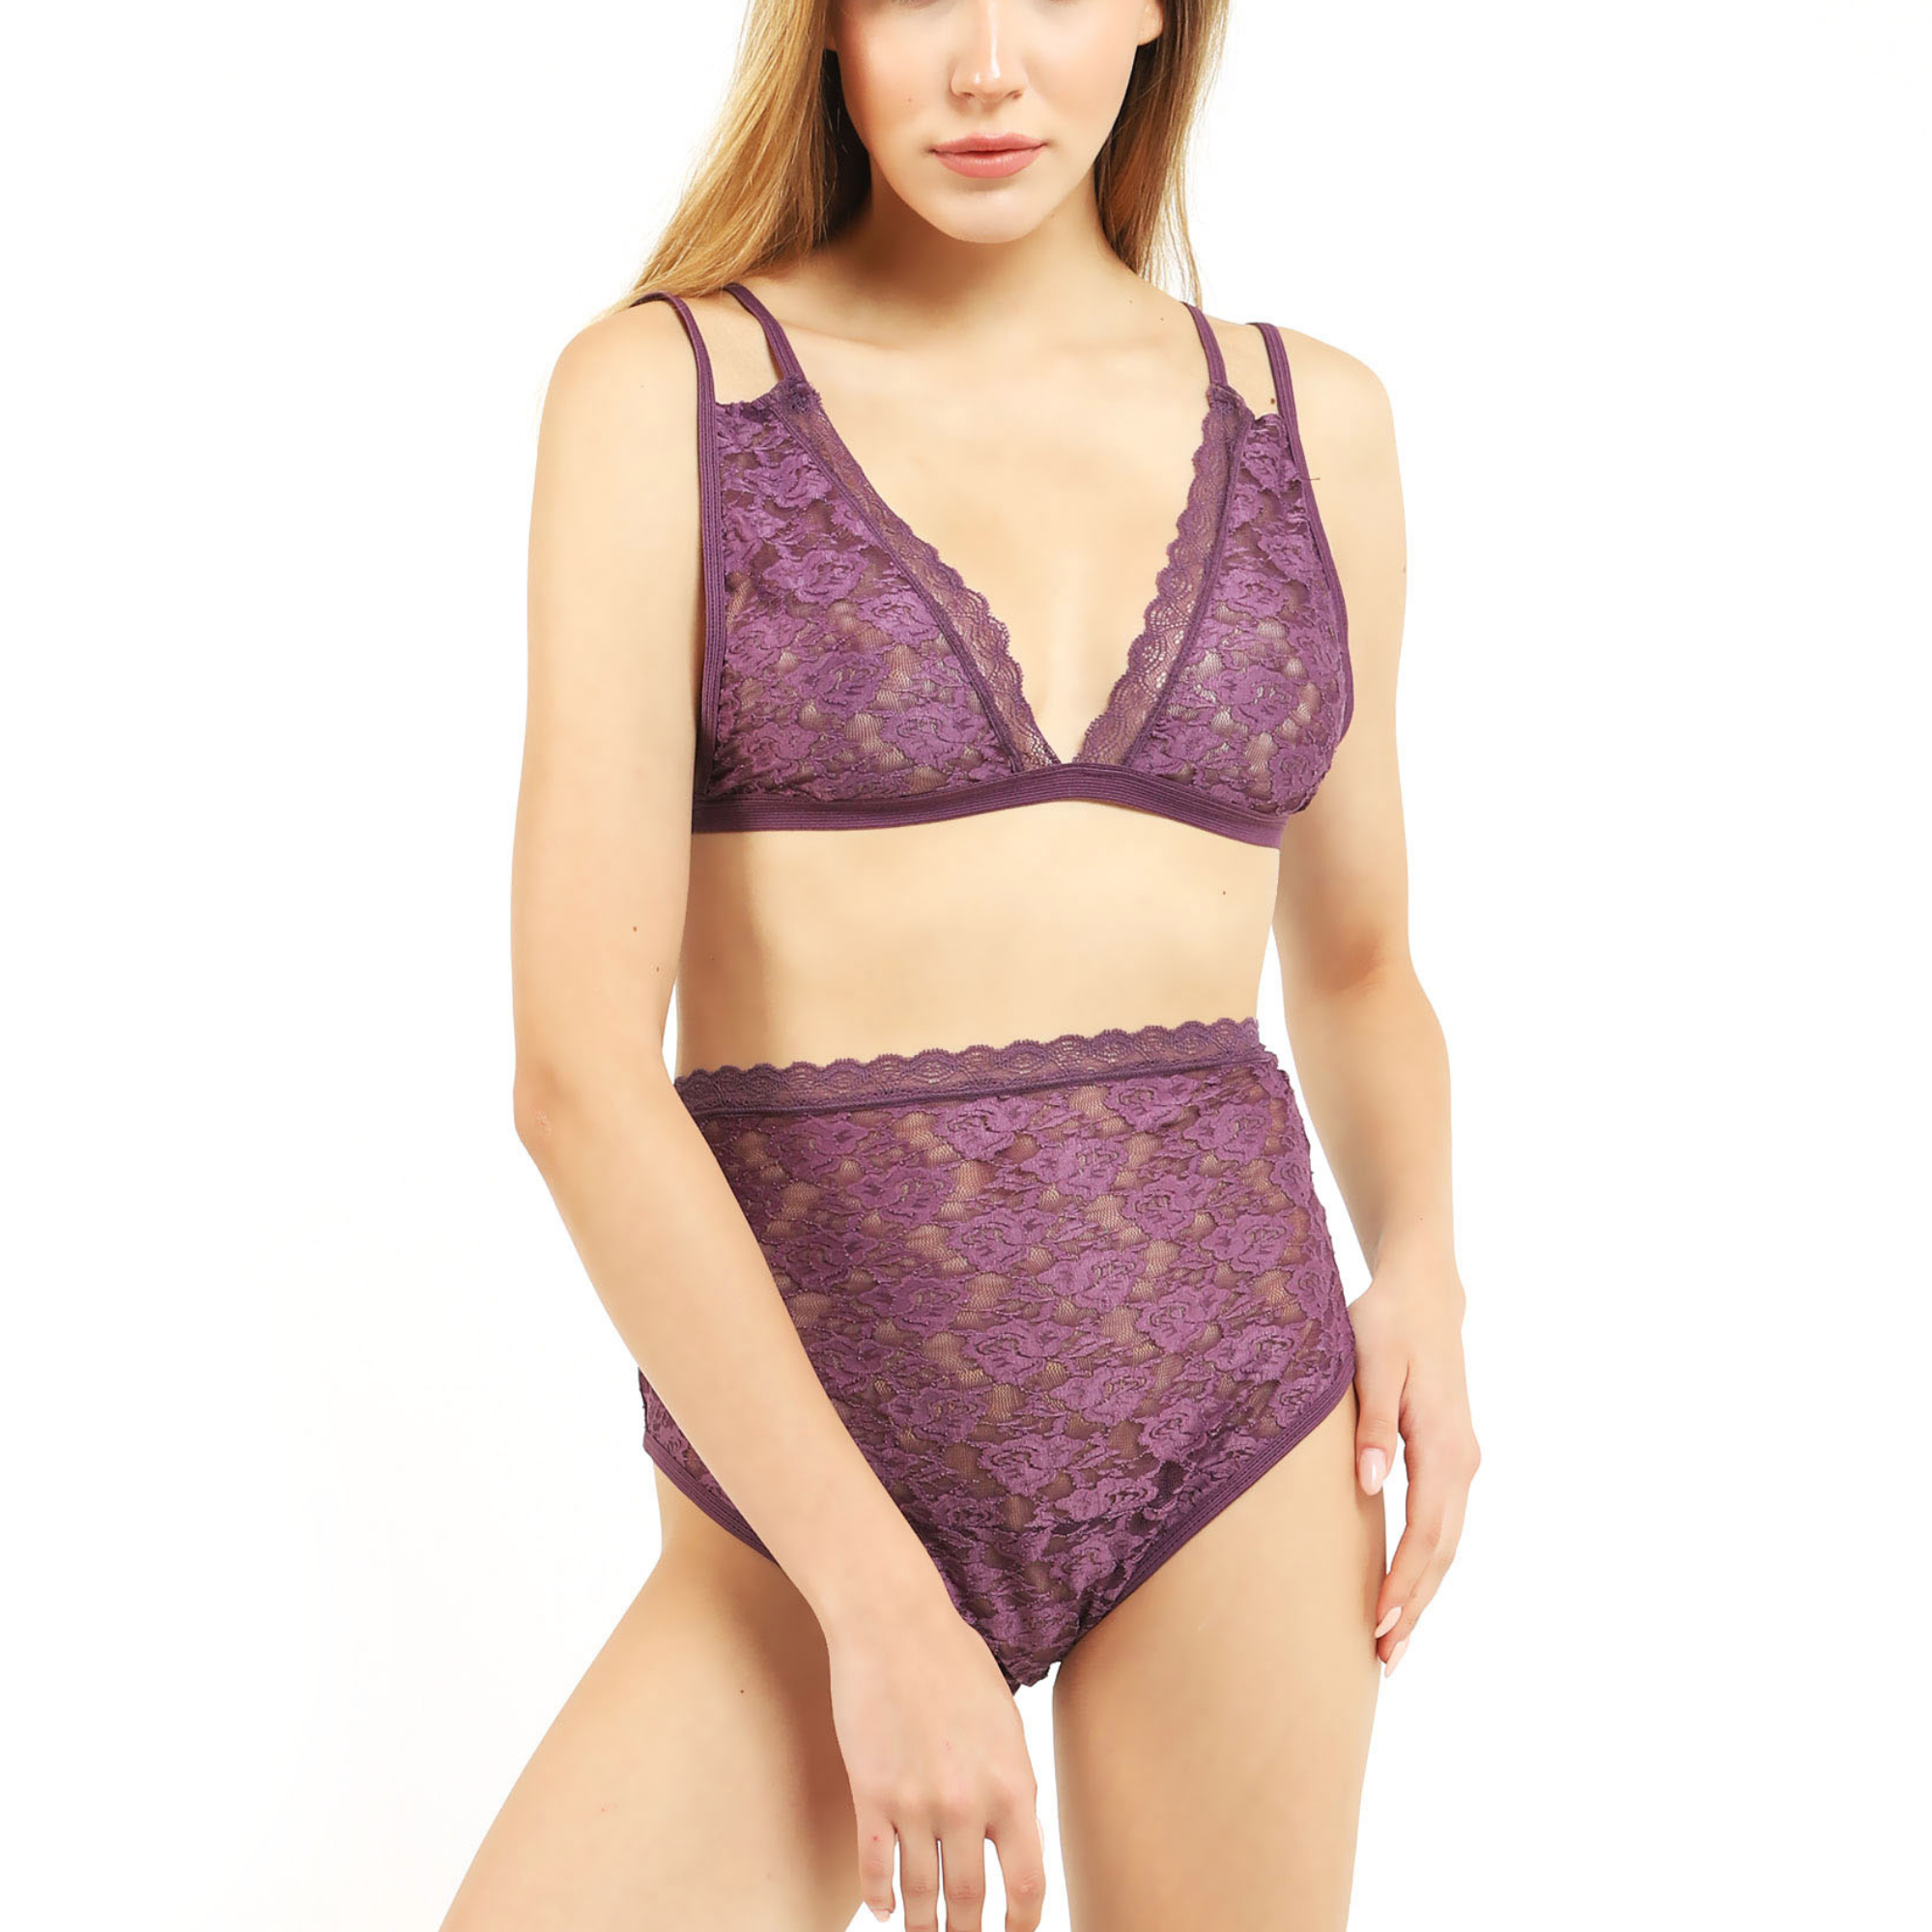 Women's Lace Lingerie Sexy Bralette Underwear 2 Piece Bra and Panty Set  Strappy Babydoll Sleepwear Purple